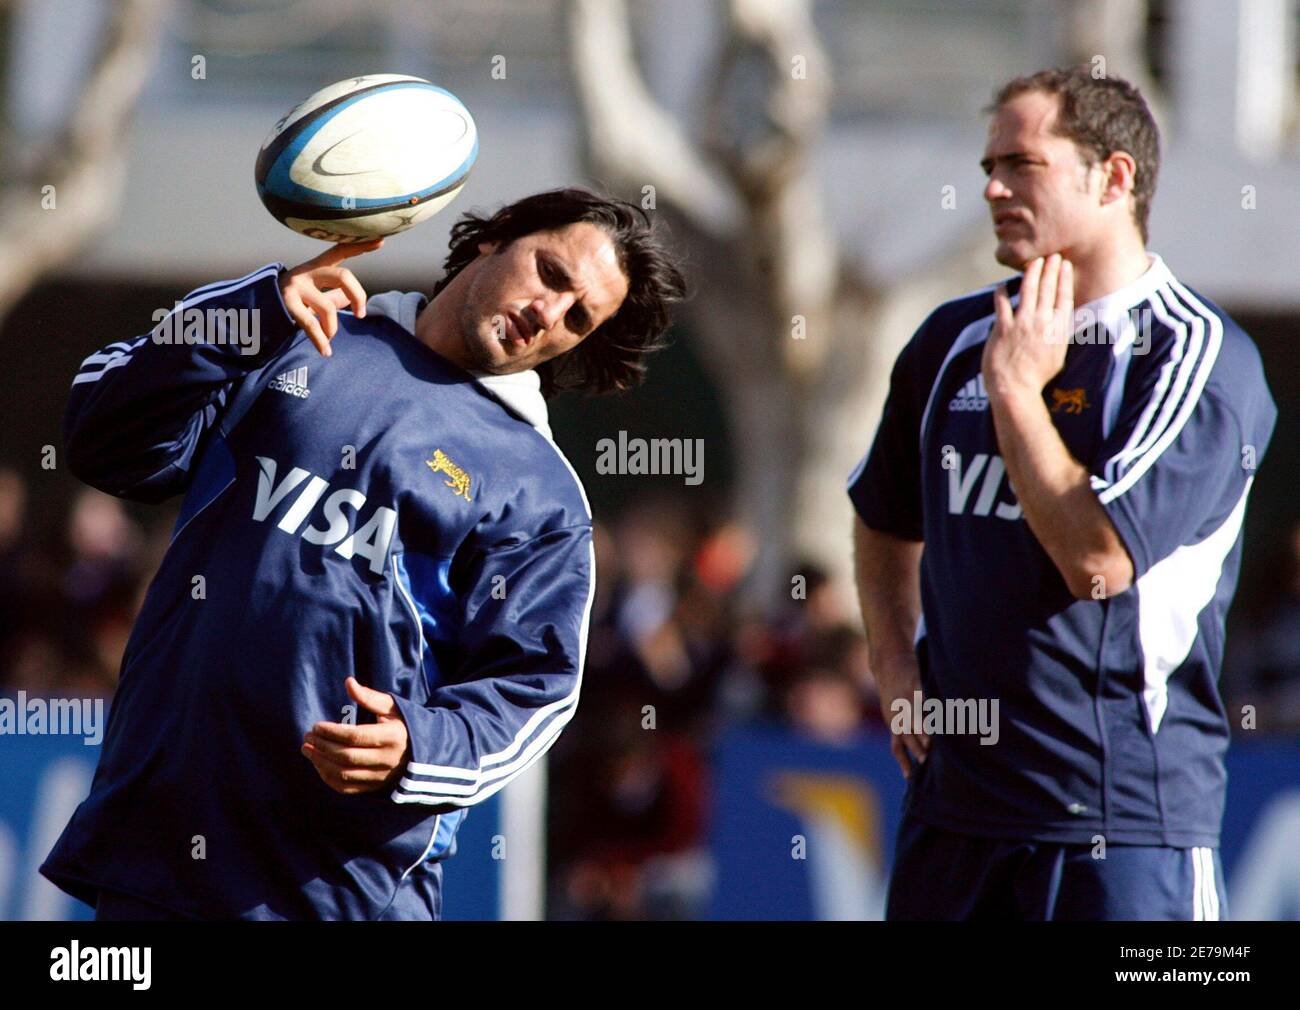 Agustín Pichot (L), capitán del equipo nacional argentino de rugby los Pumas,  equilibra el balón junto a su compañero Felipe Contepomi durante una sesión  de entrenamiento antes de la Copa Mundial de